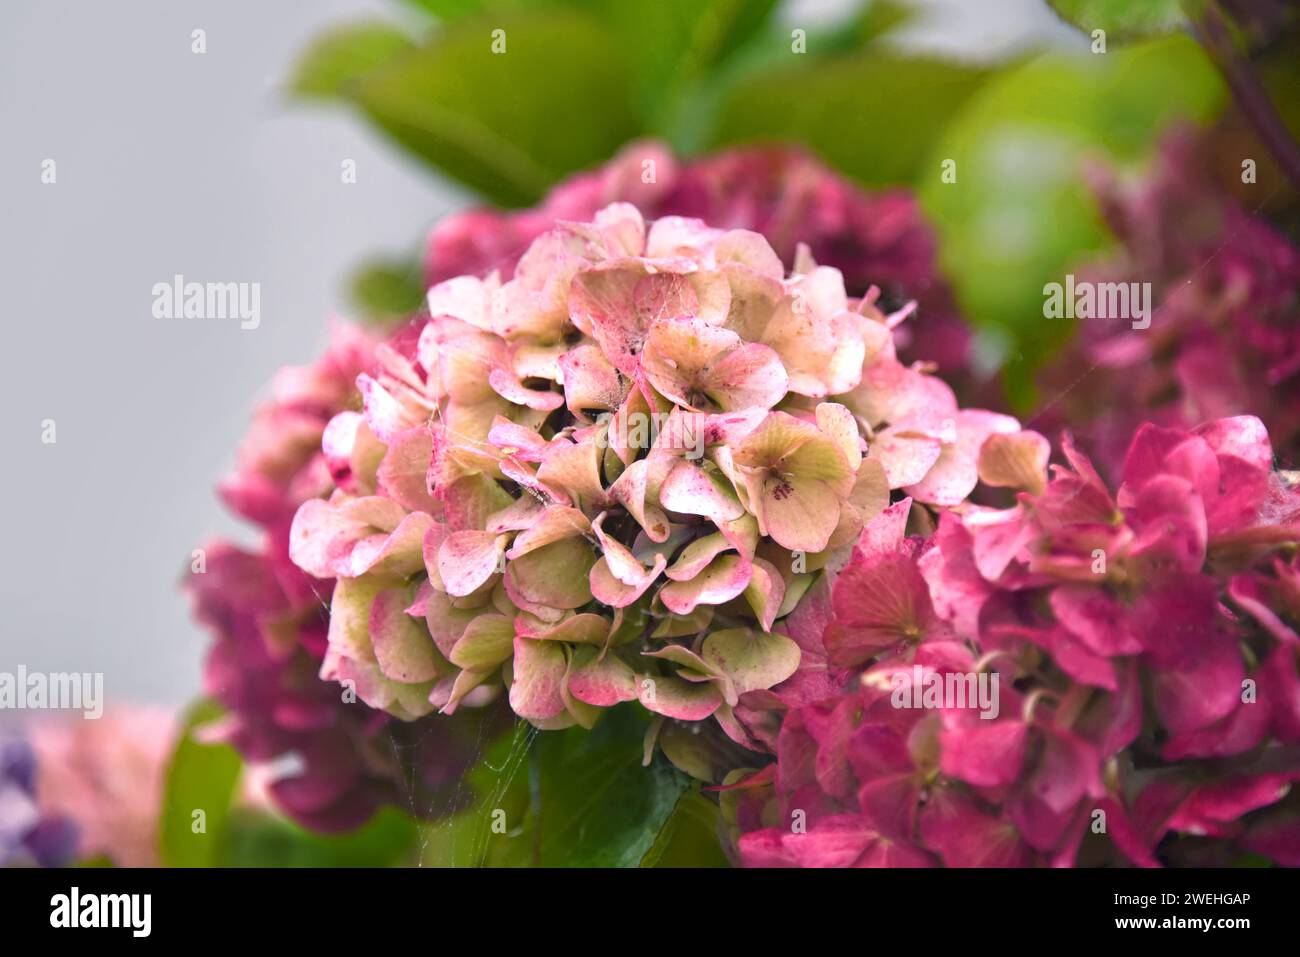 Closeup muestra las variaciones de color en esta gran flor de Hydrangea, en Oregon. Las flores son blancas con puntas rosadas, rosadas y granate. Foto de stock